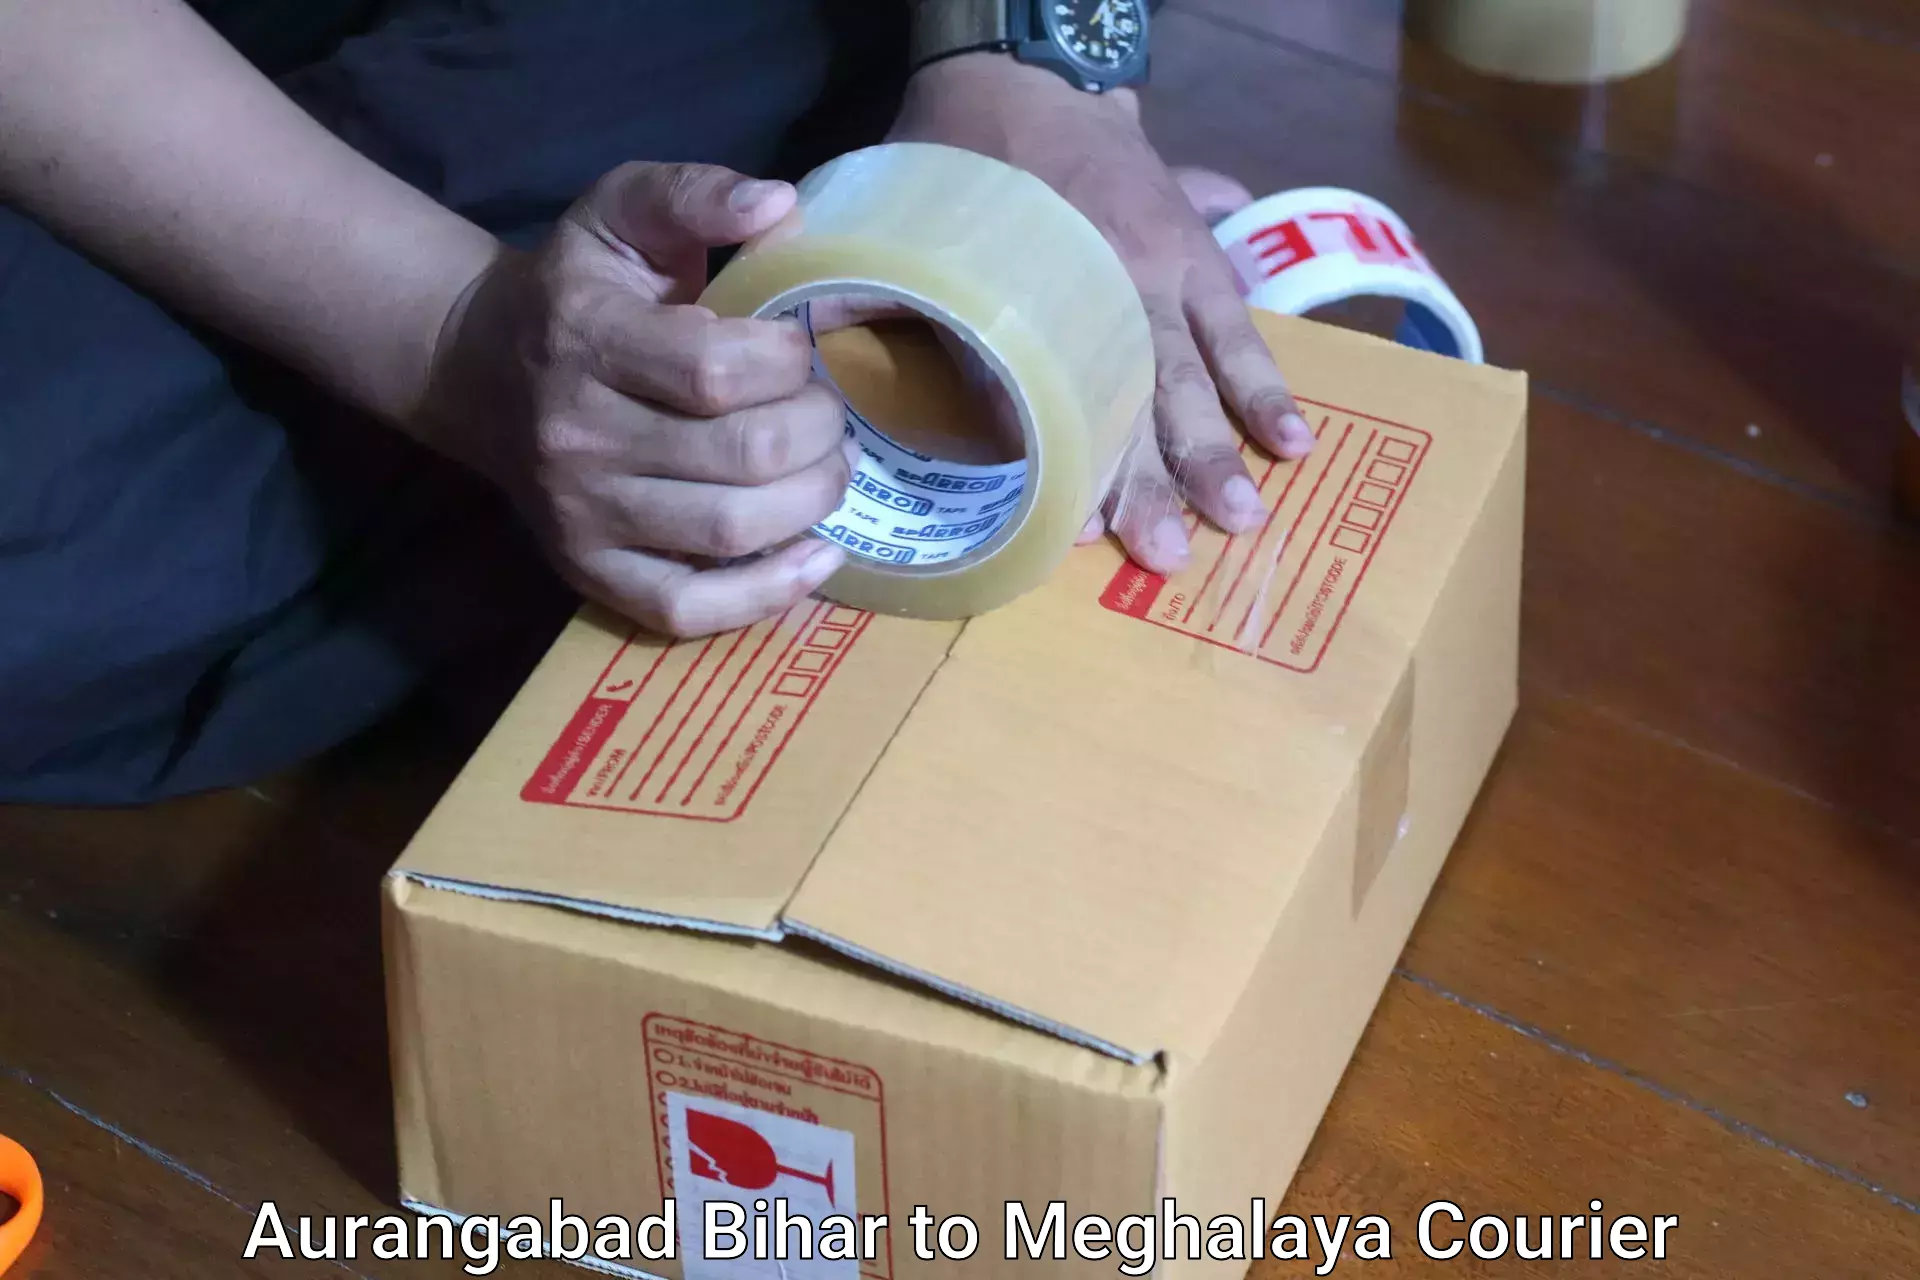 Reliable luggage courier Aurangabad Bihar to Meghalaya